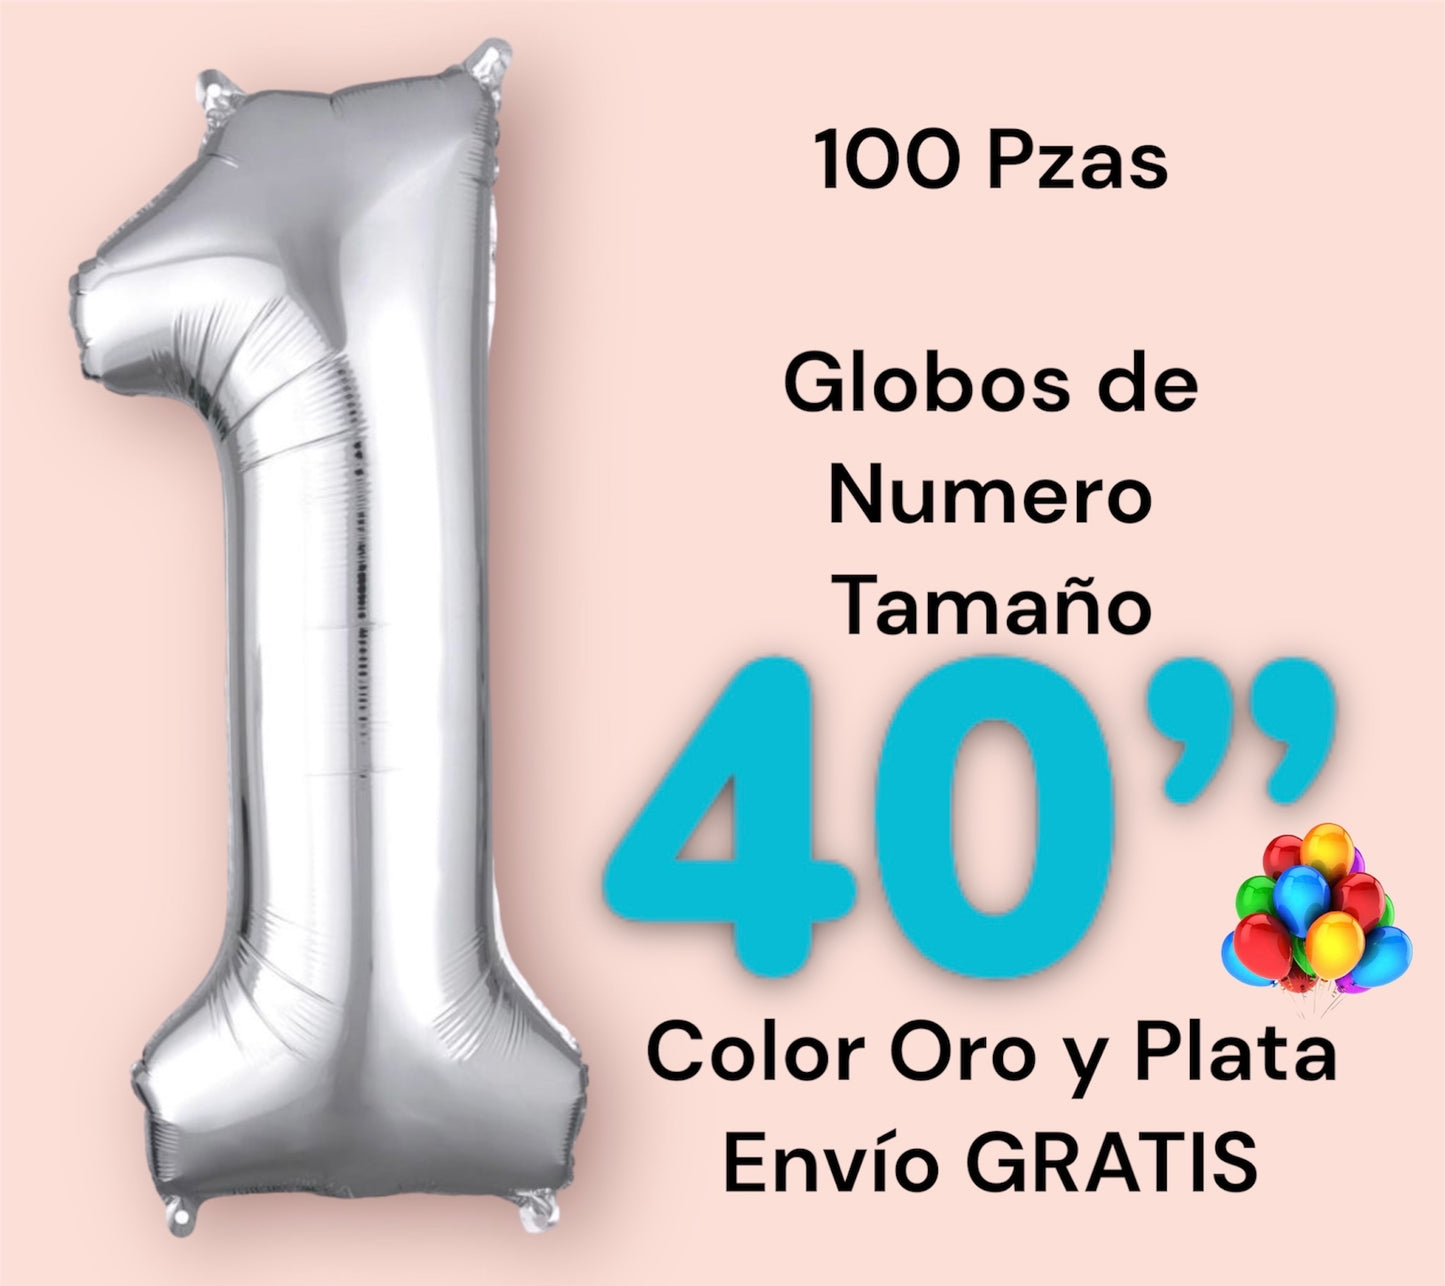 Paquete 100 globos 40” Color Oro y Plata